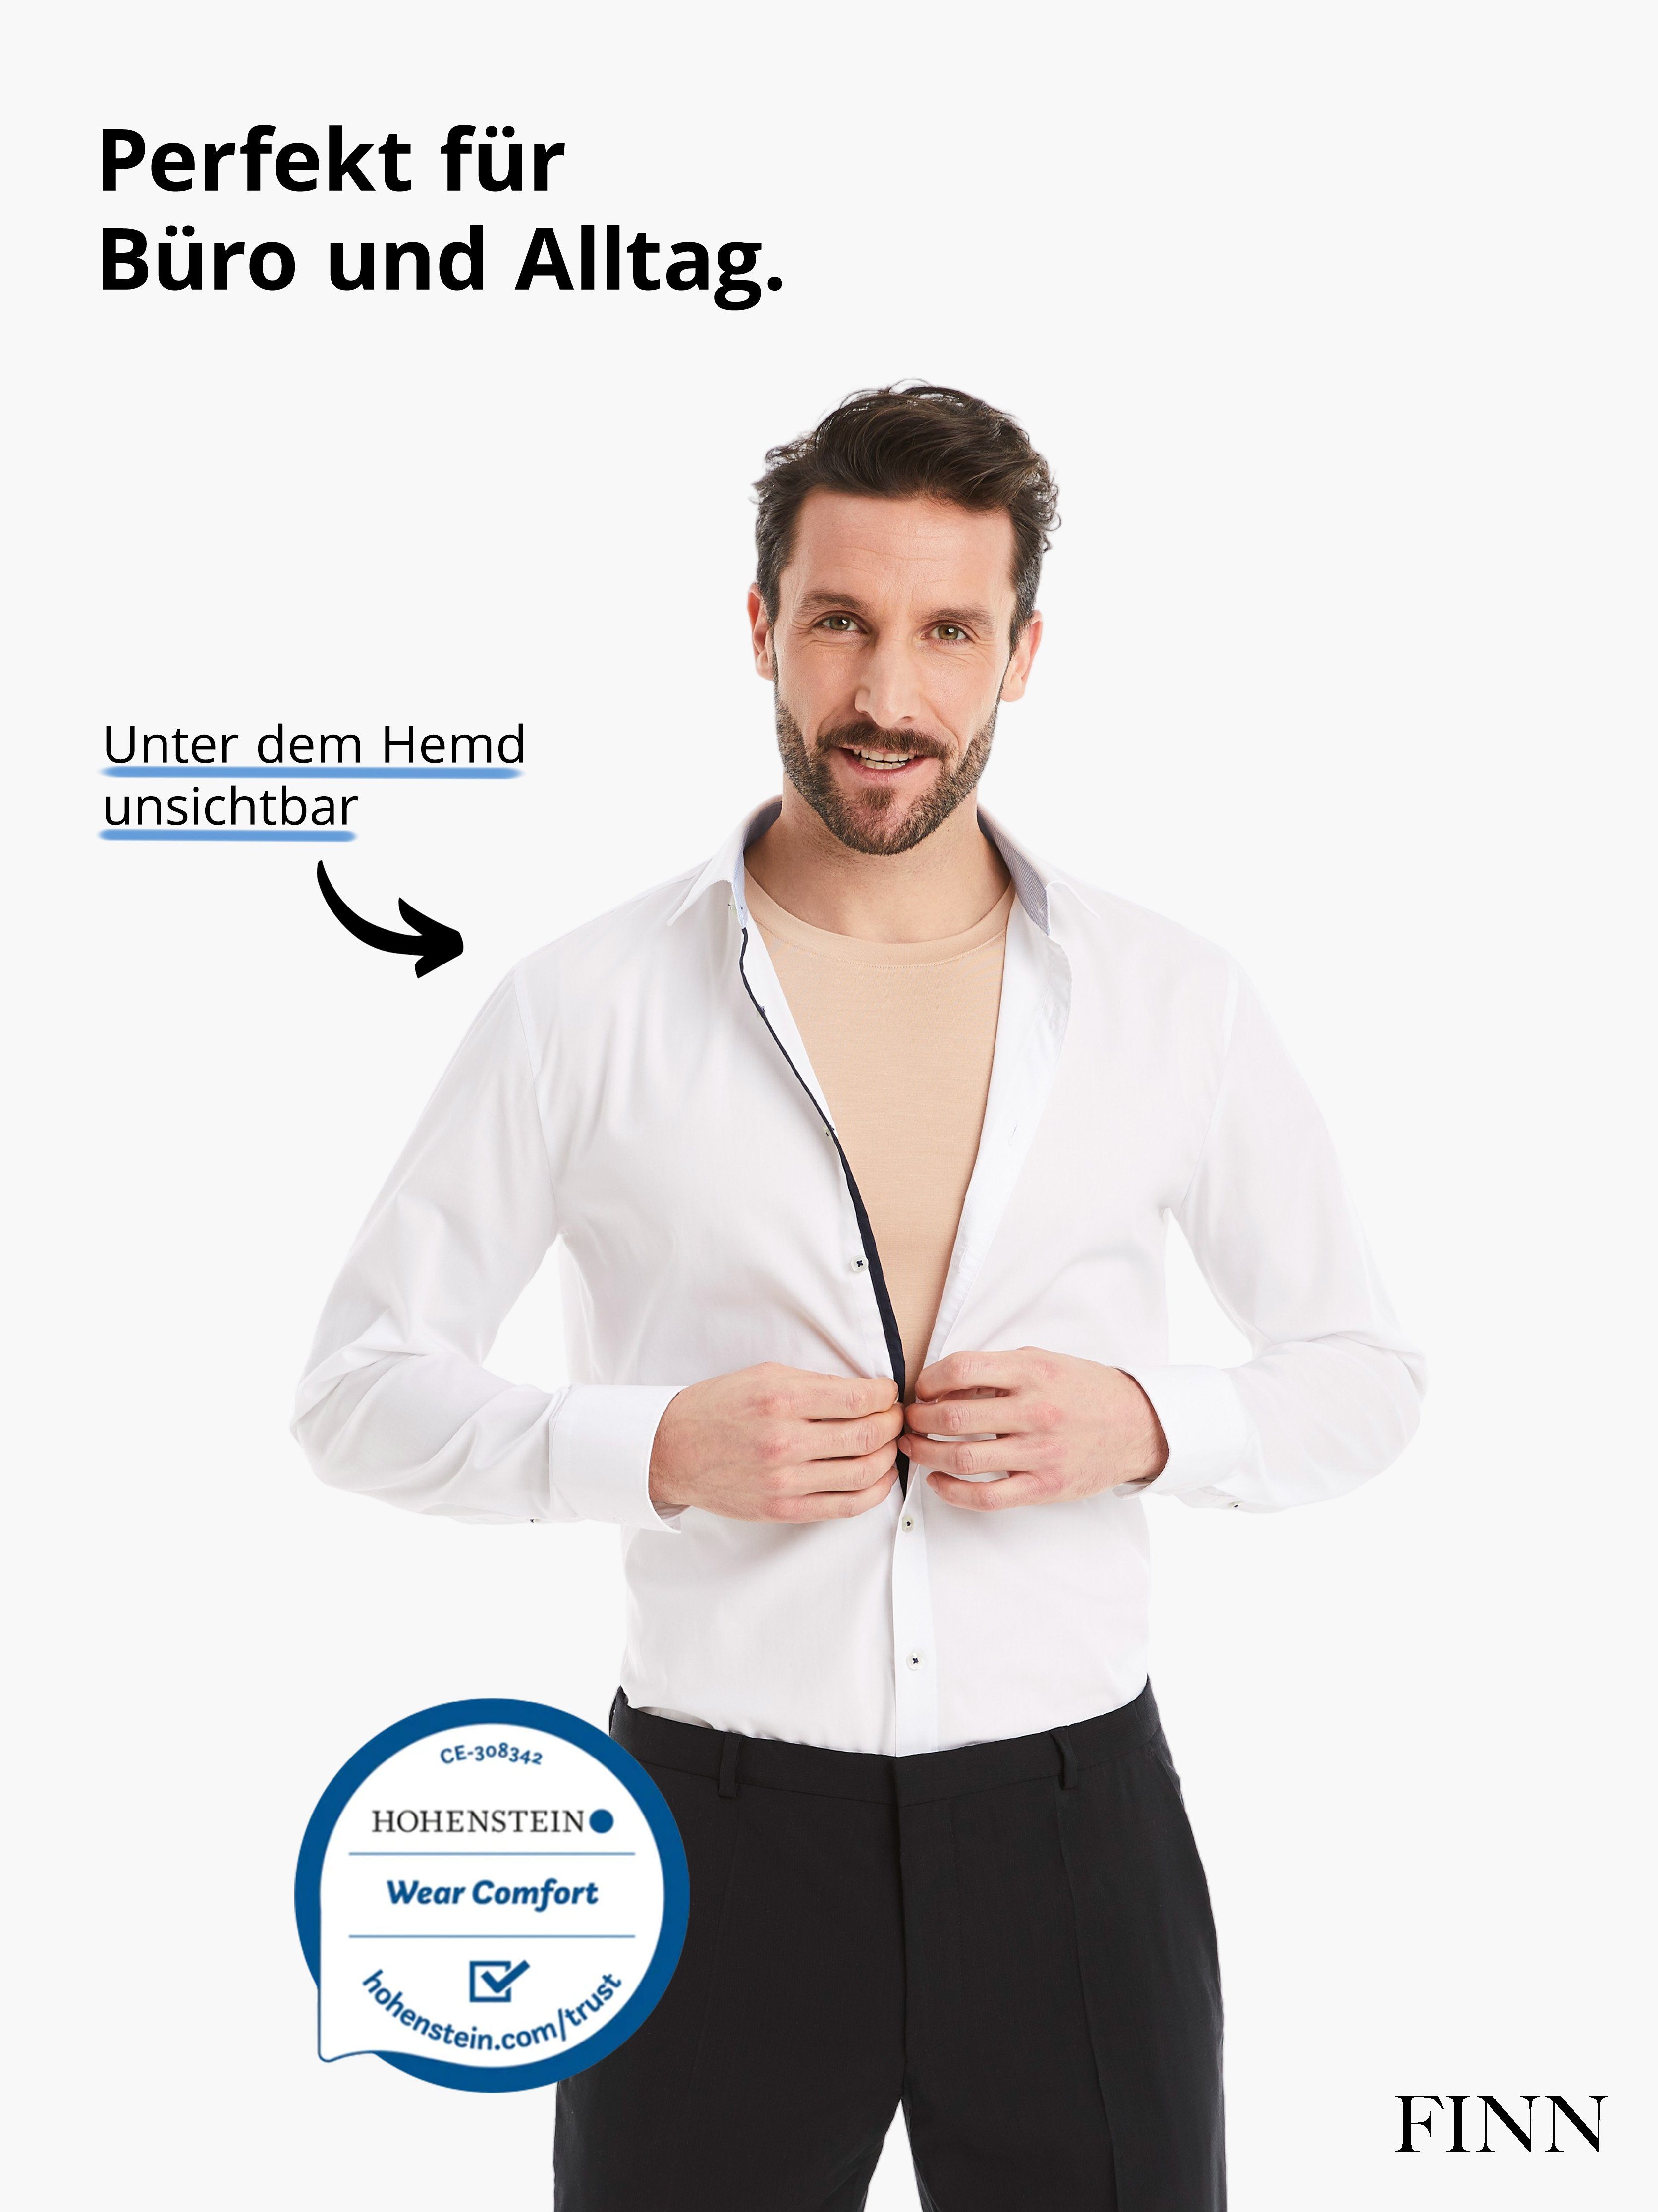 Light-Beige FINN Business feiner Ärmellos maximaler mit Achselhemd Rundhals Micro-Modal Unterhemd Design Tragekomfort Herren Stoff,